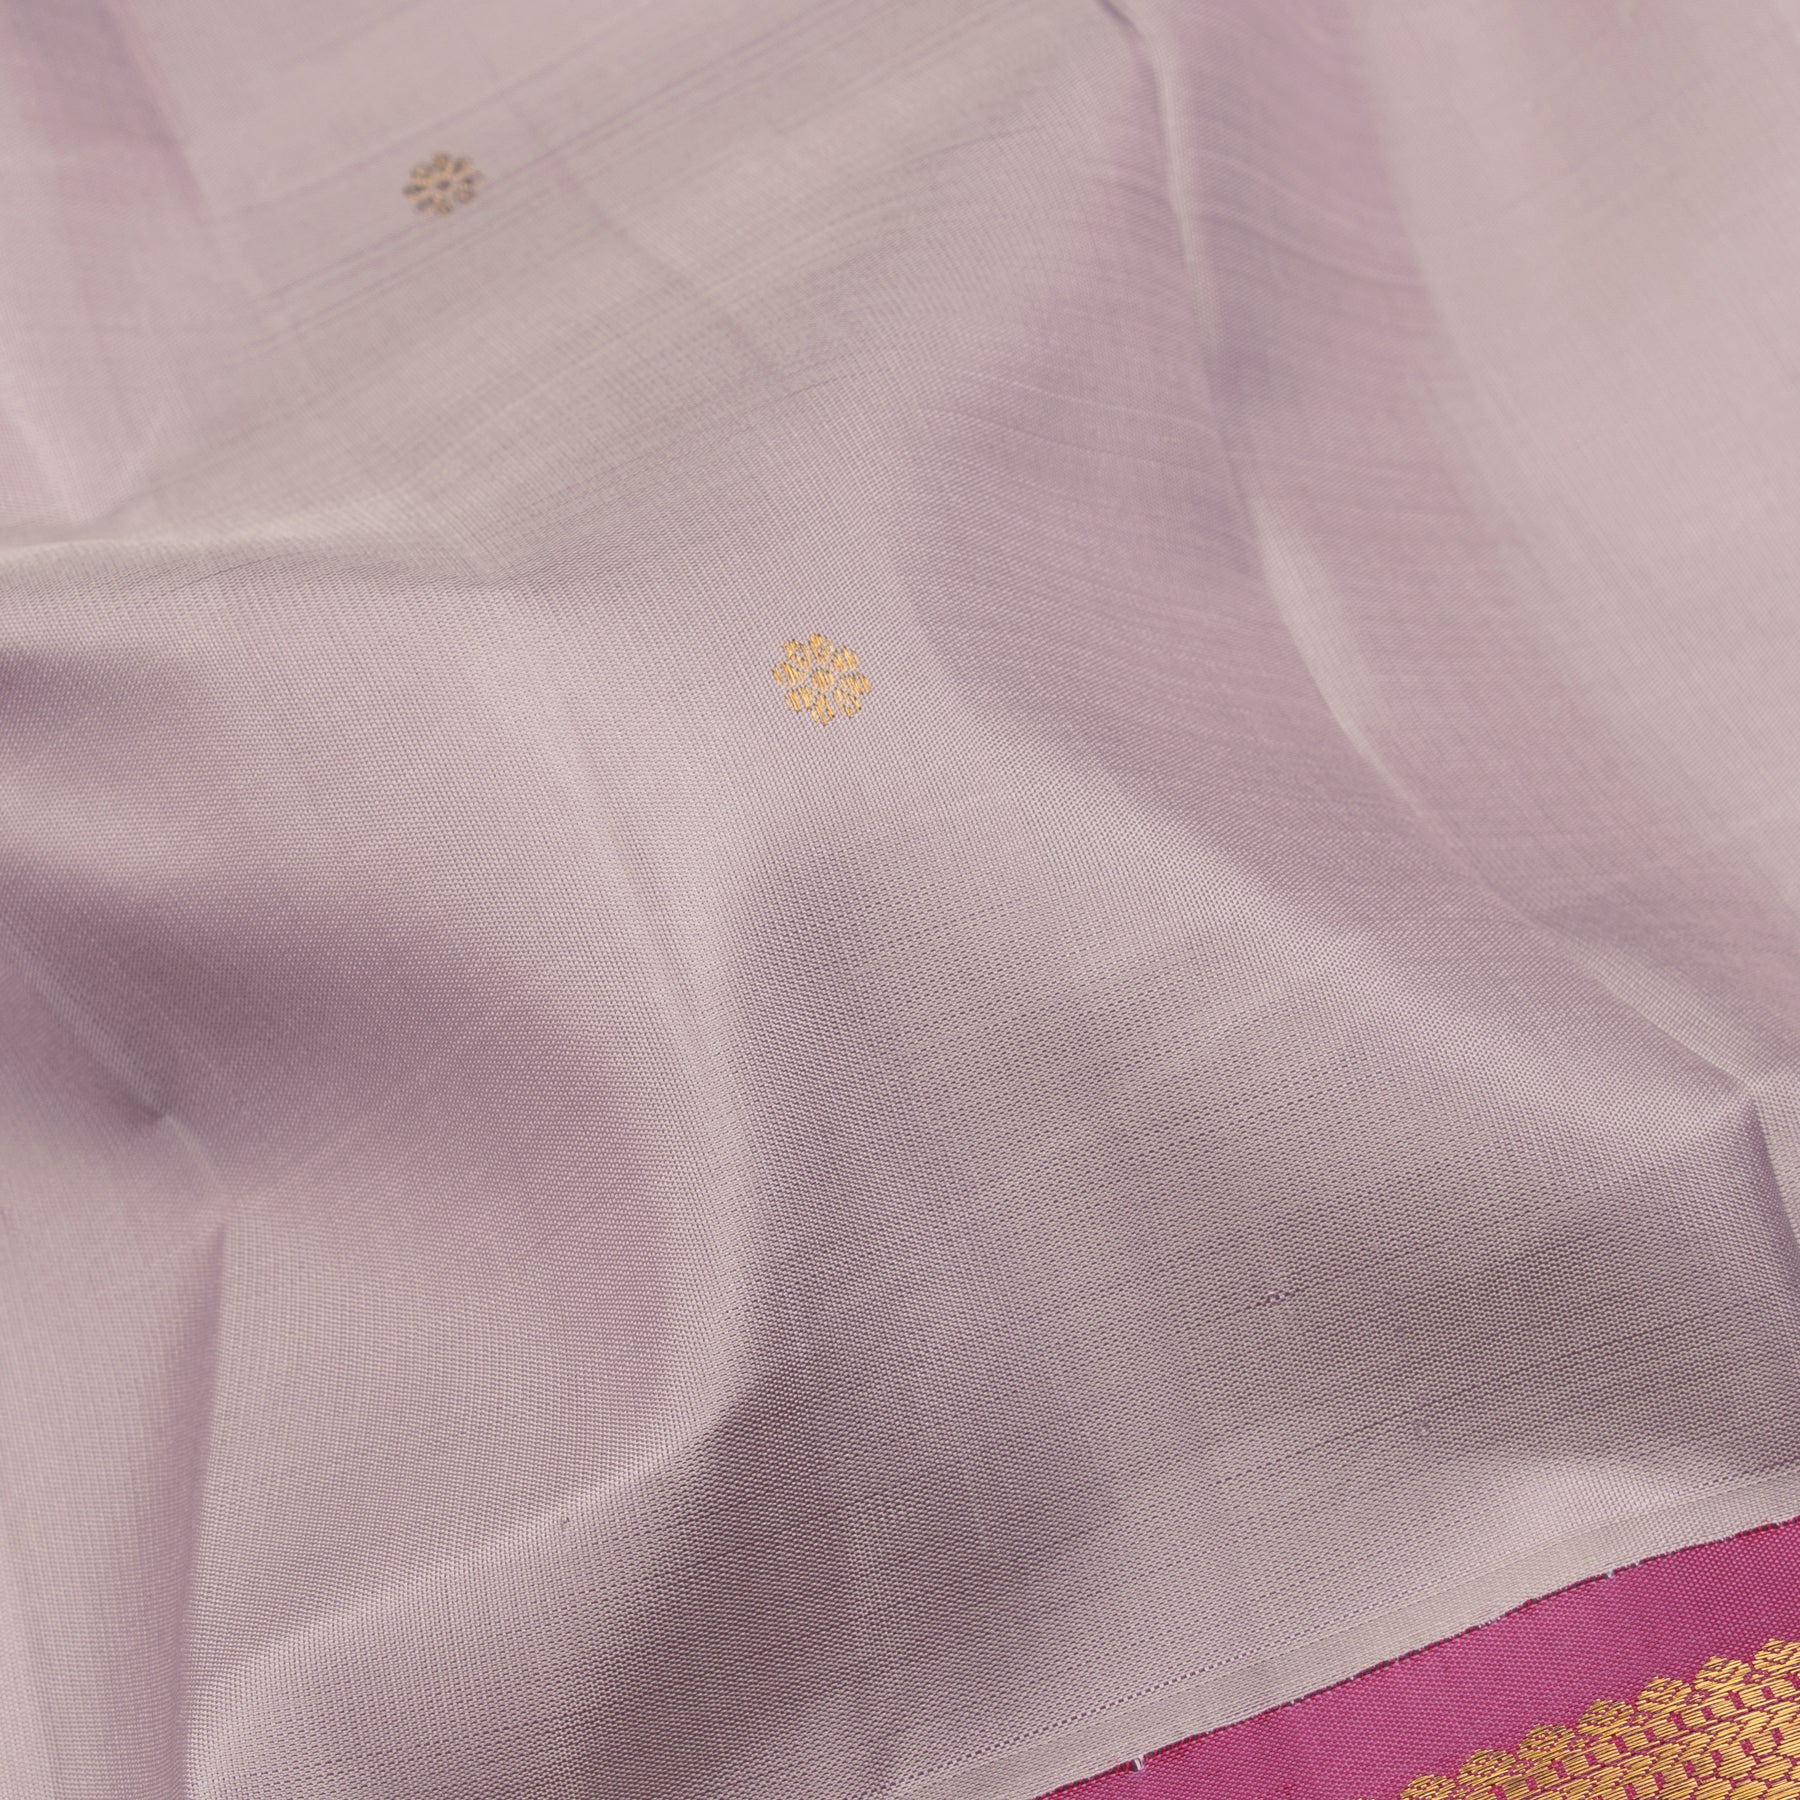 Kanakavalli Kanjivaram Silk Sari 23-611-HS001-04527 - Fabric View